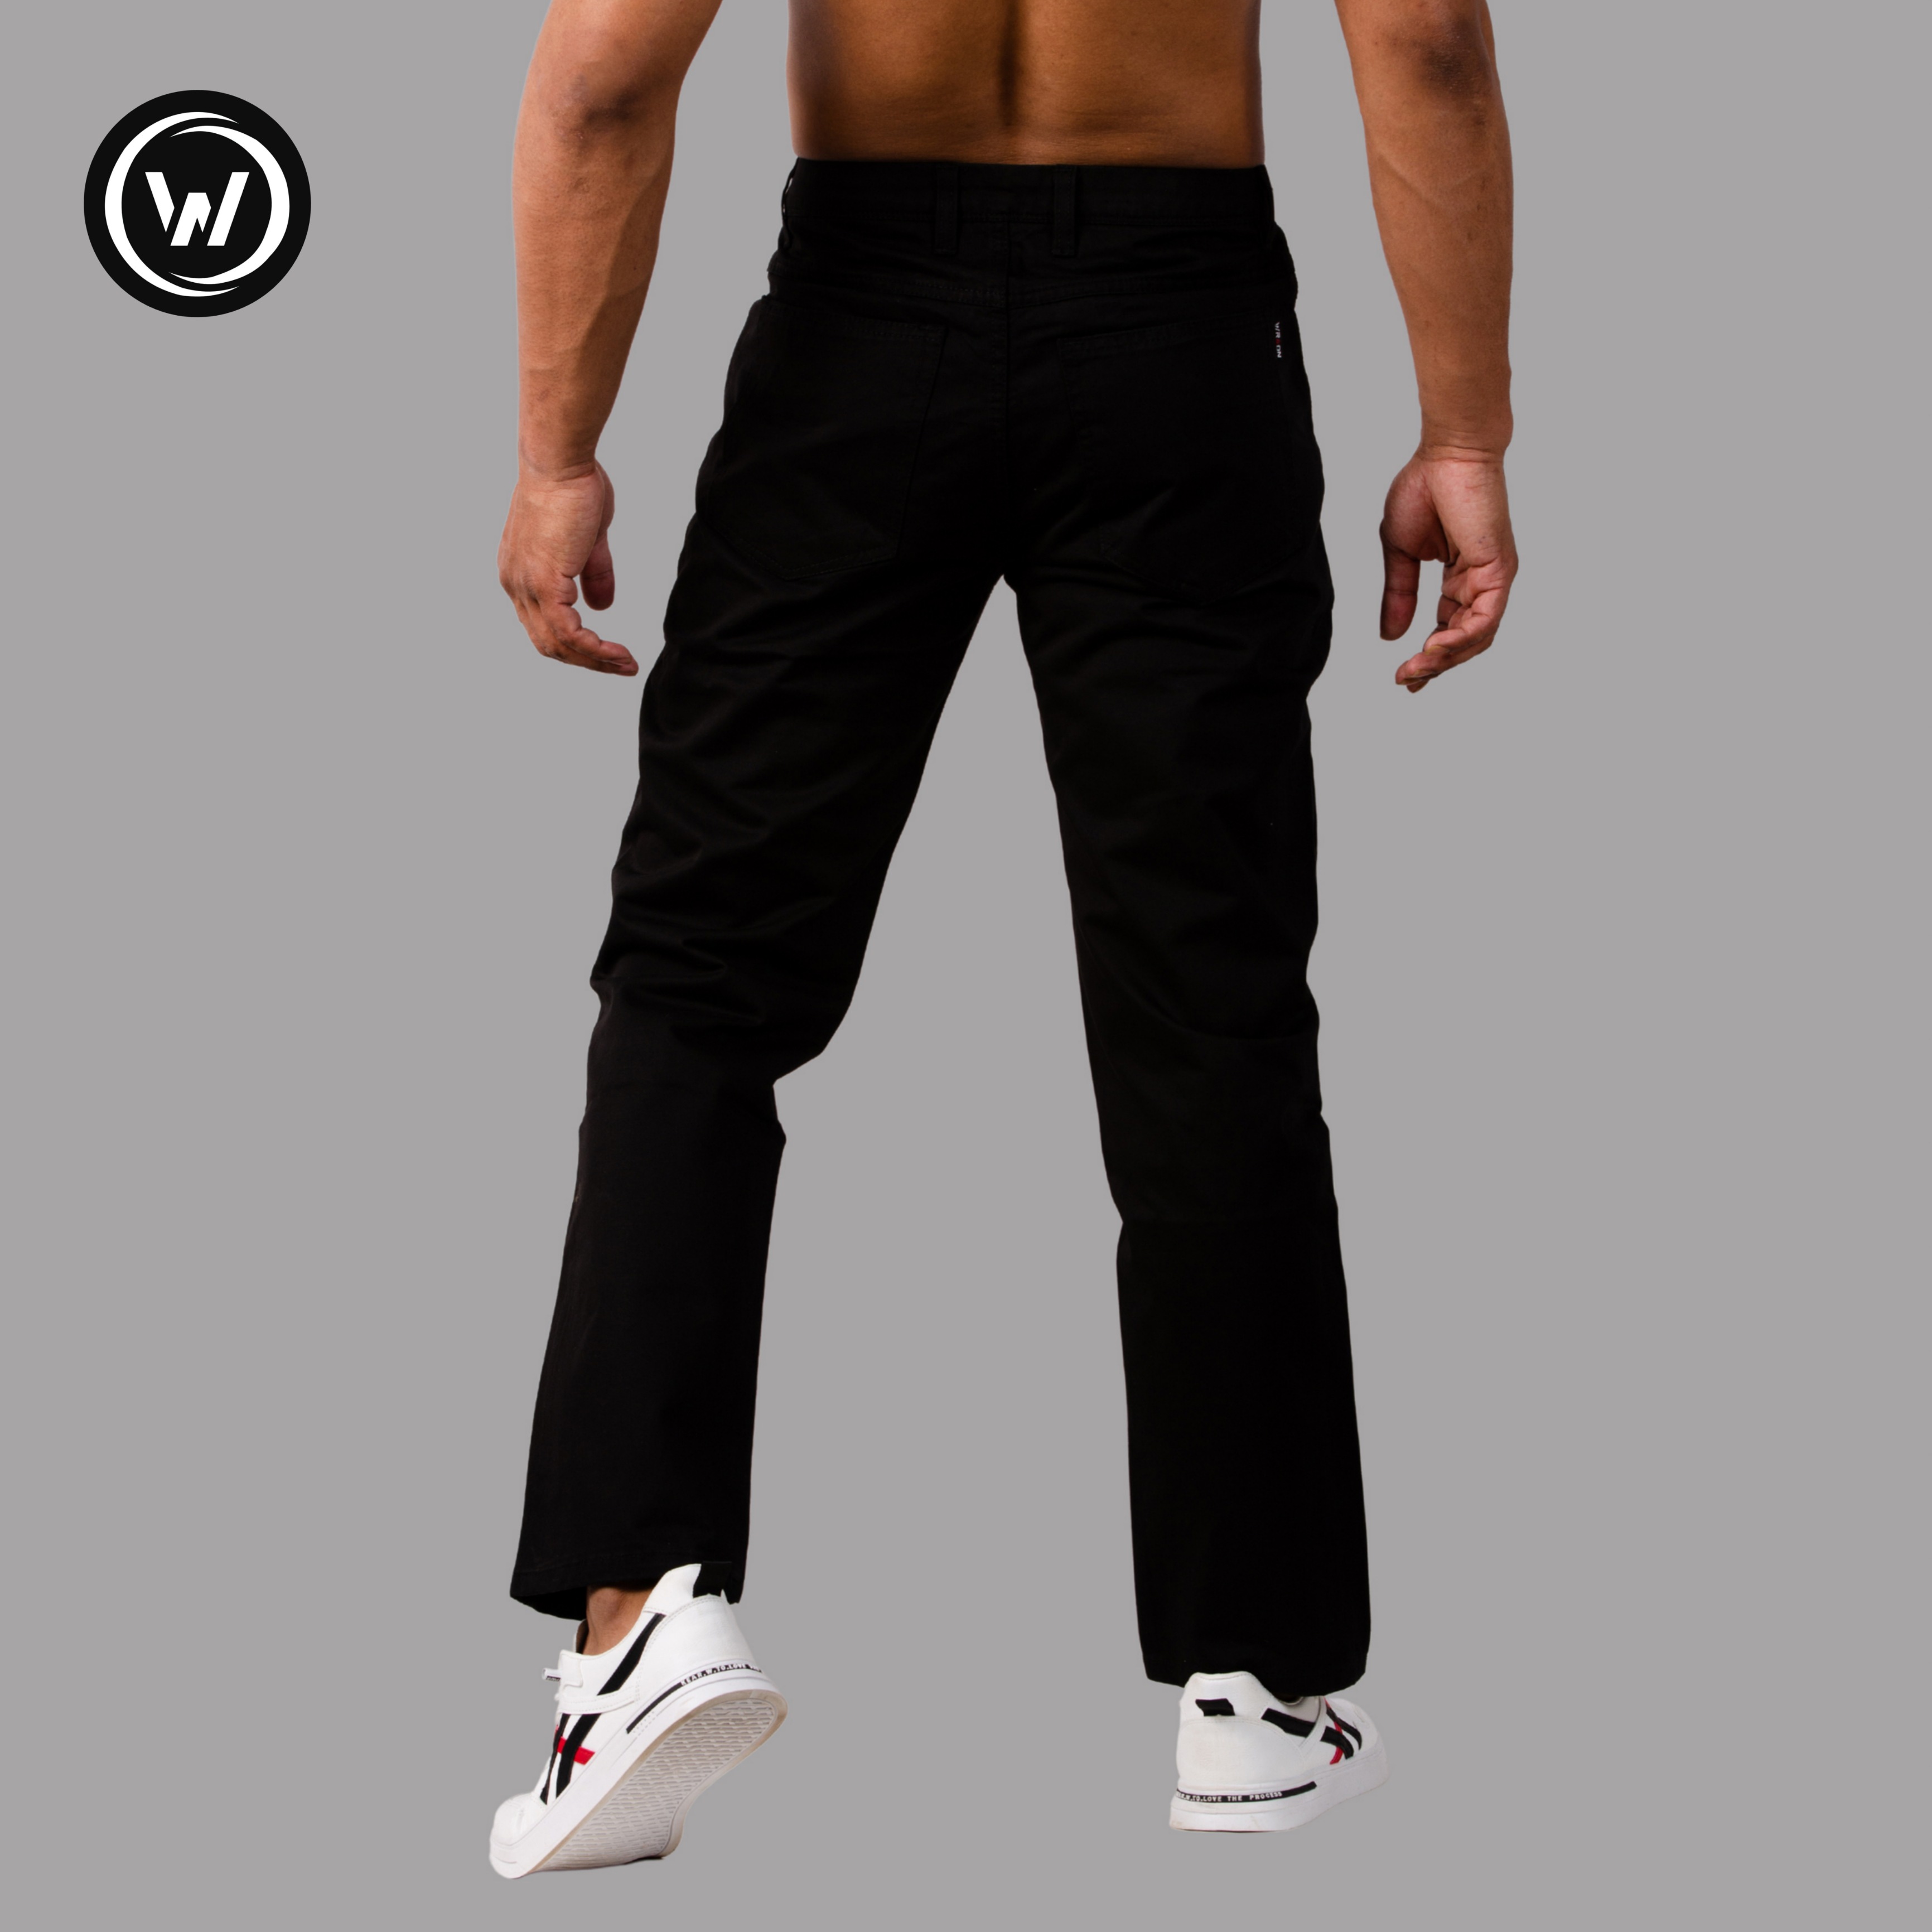 Wraon Black Regular Fit Solid Premium Cotton Jeans Pant For Men - Fashion, Pants For Men, Men's Wear, Jeans Pants